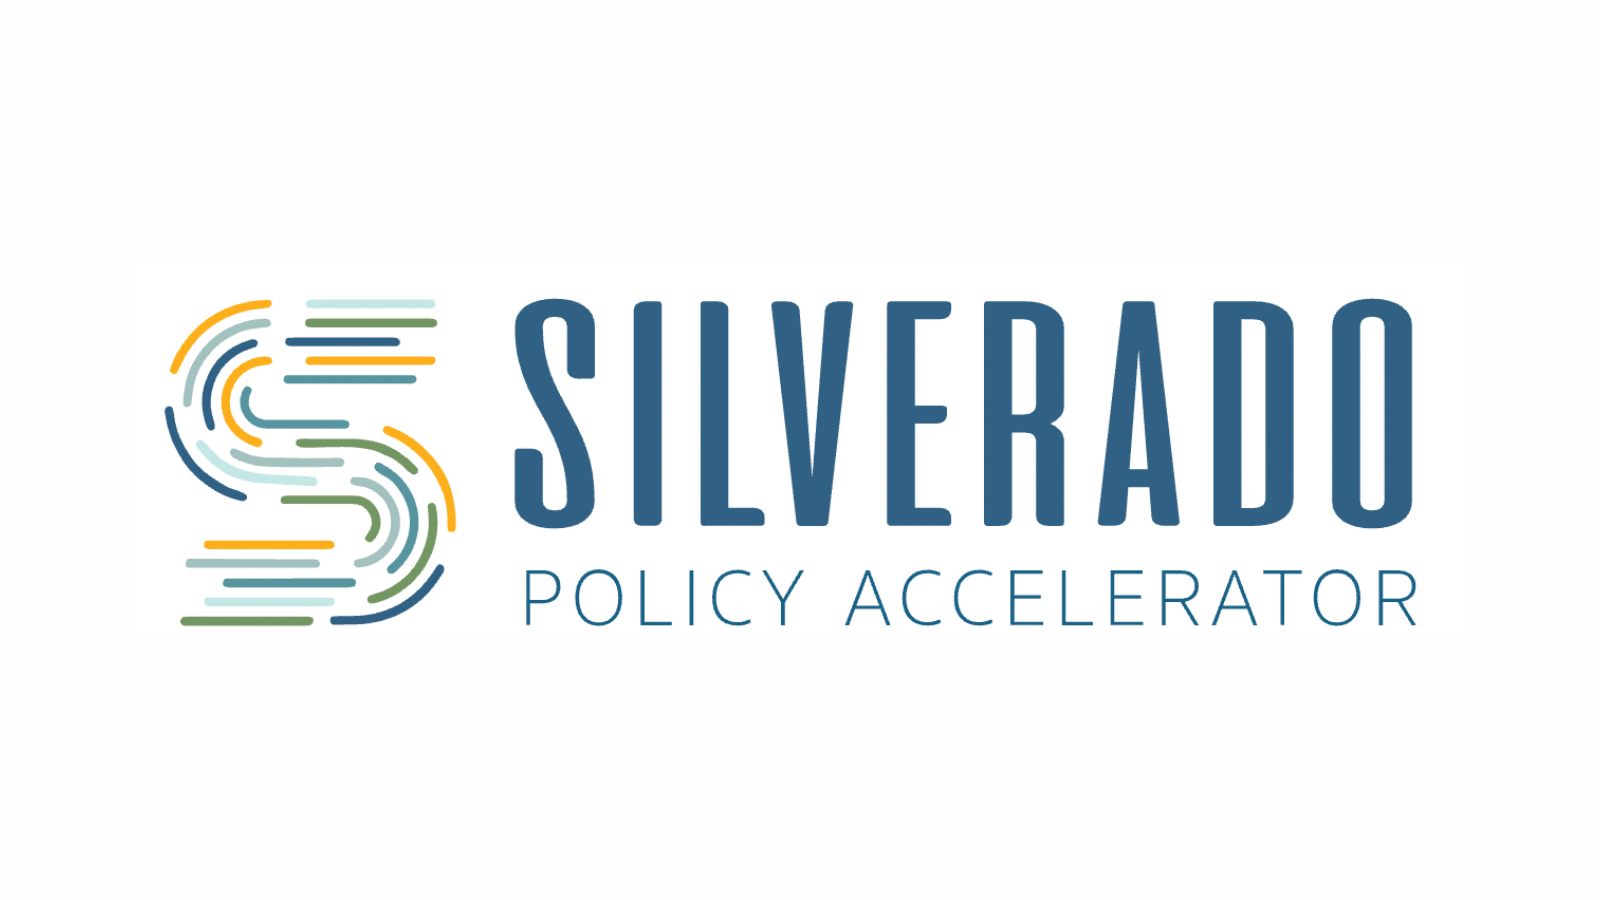 Silverado Policy Accelerator